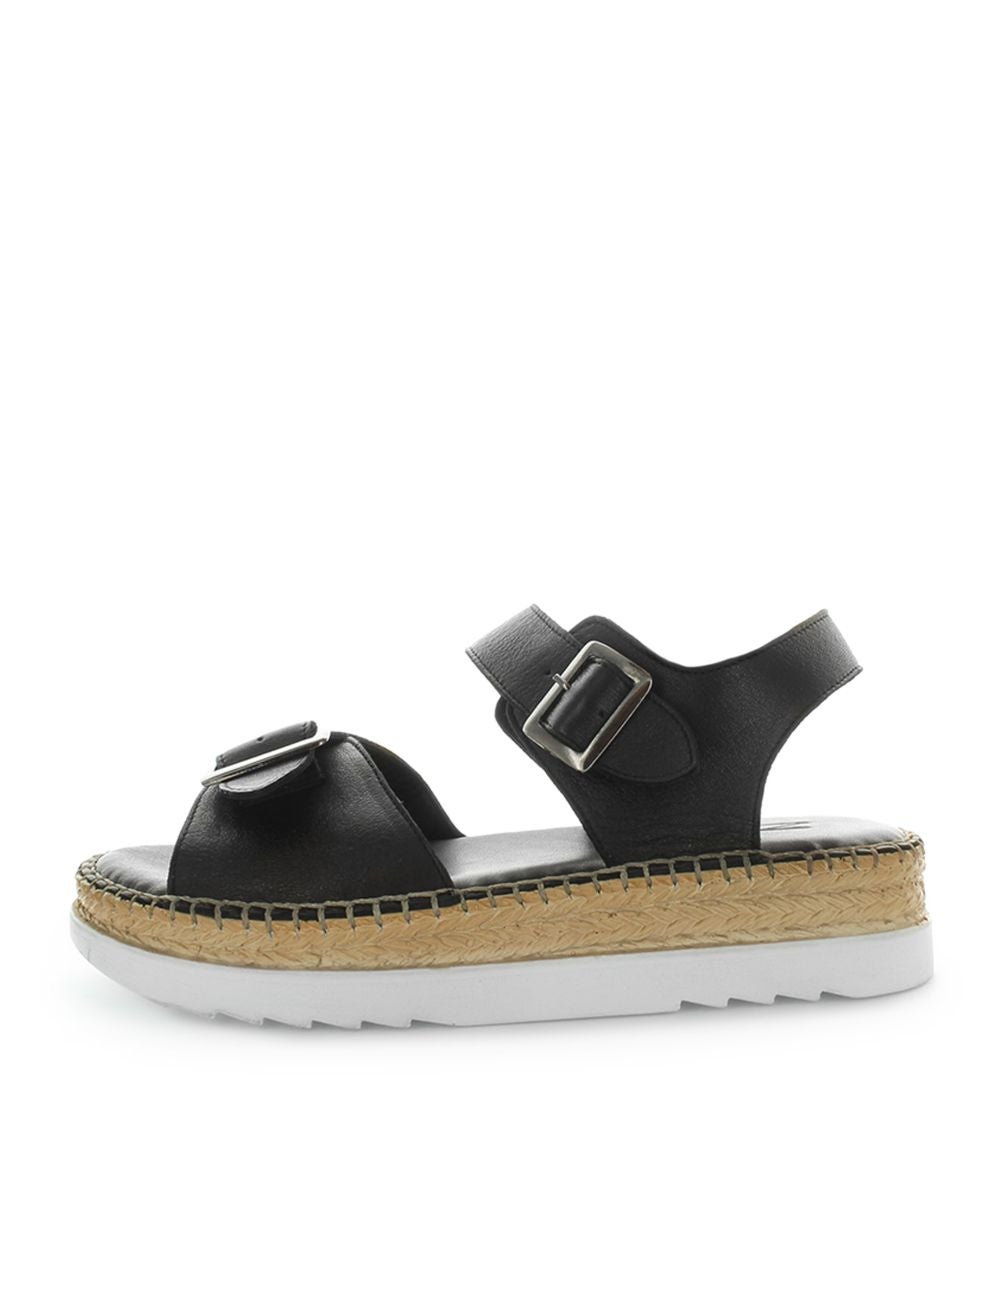 ZOLA Hisari Platform Sandal | Noni B Australia